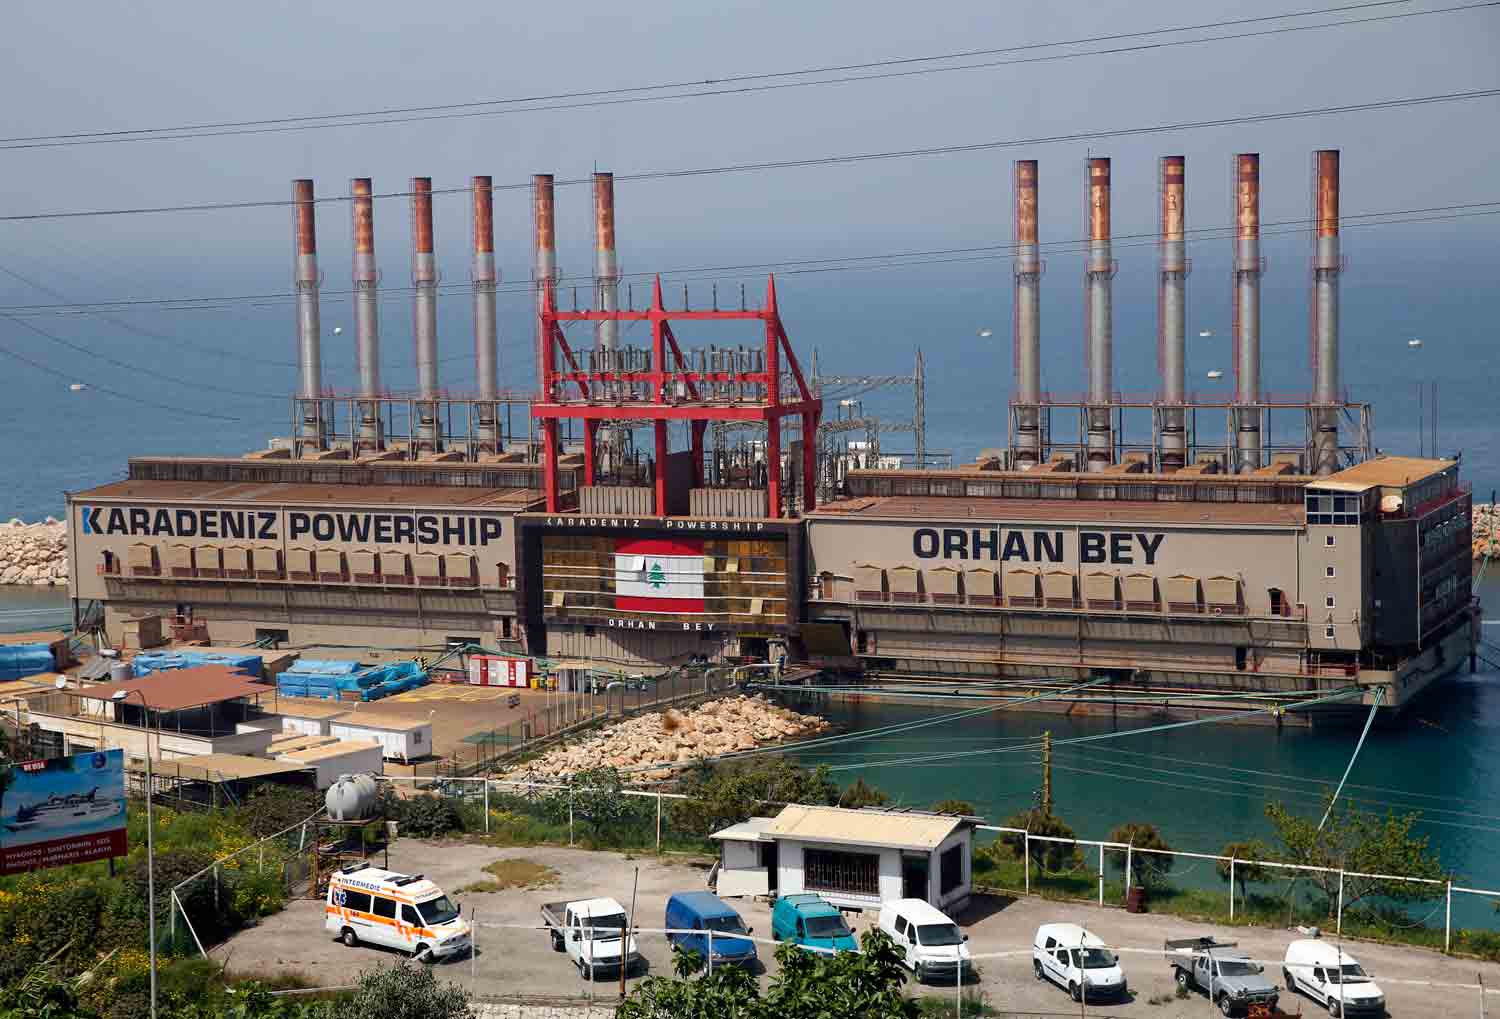 السفن التركية التي توفر الكهرباء في البلاد  تثير جدلا بين اللبنانيين